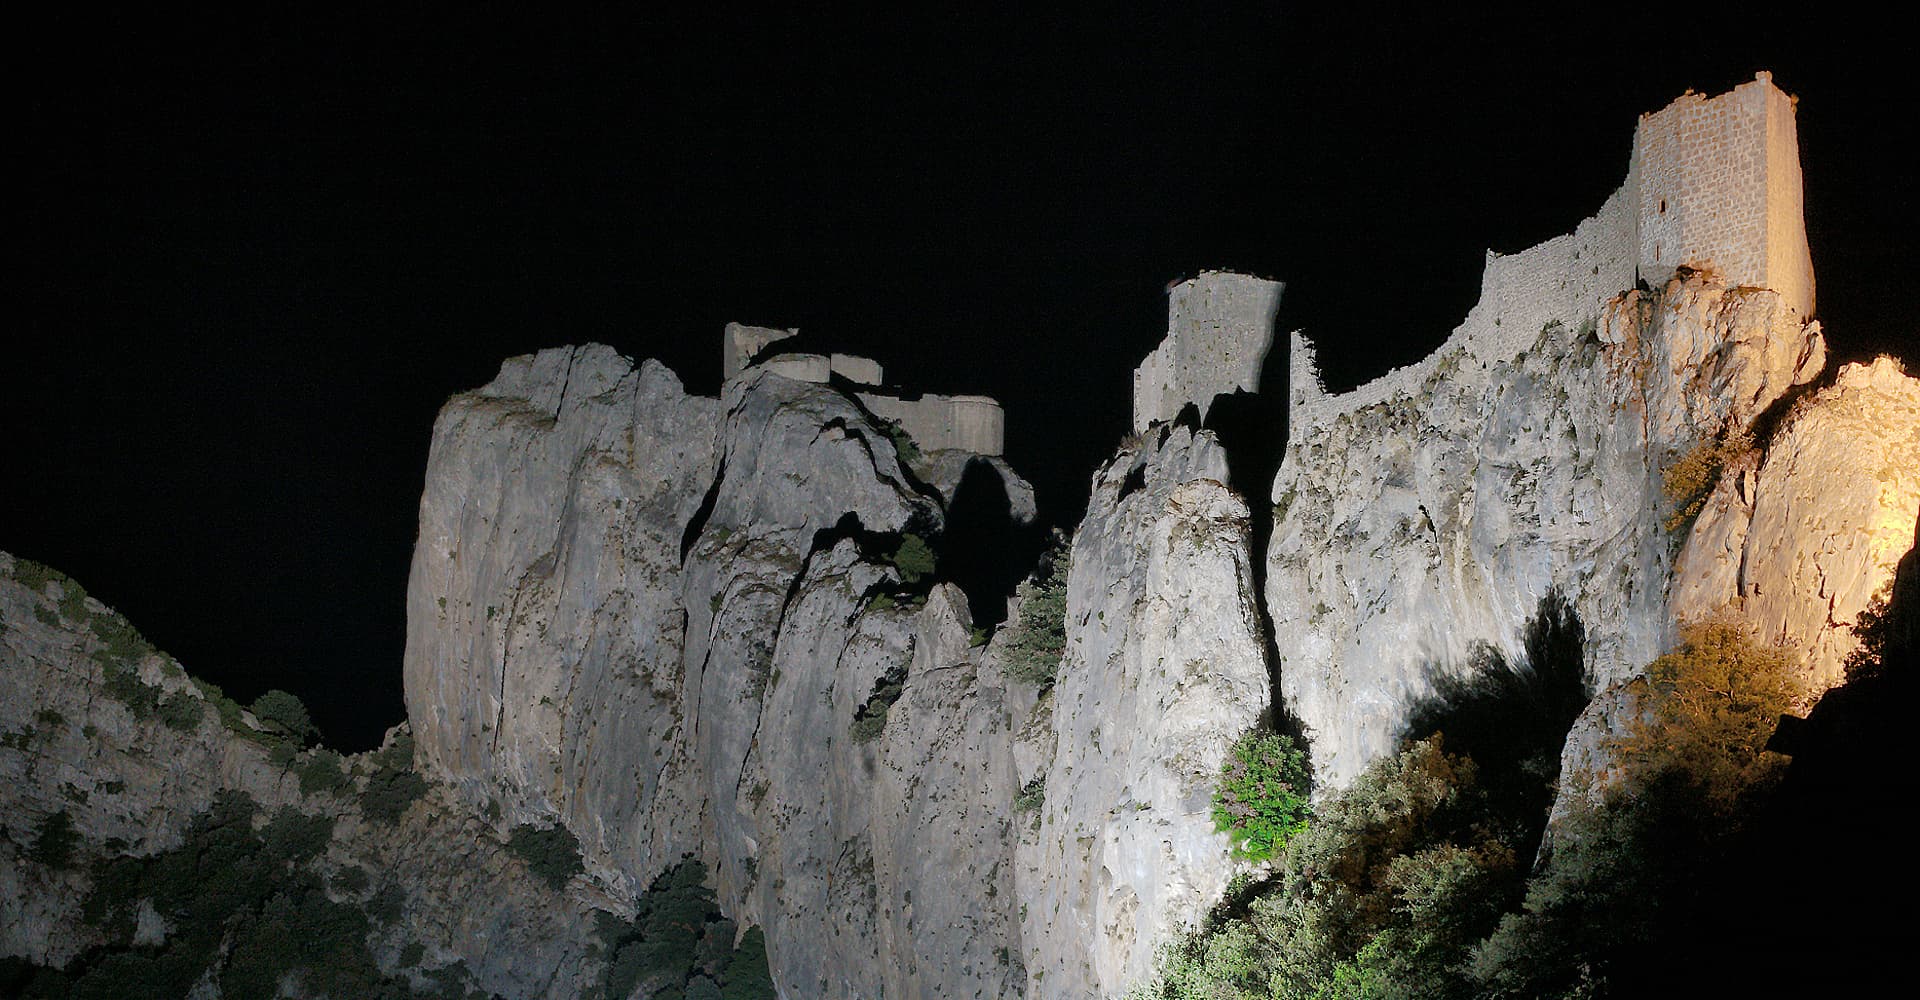 Le château cathare de Peyrepertuse en vue nocturne, depuis bâtiment d'accueil (photographie : Philippe Contal, 2018)